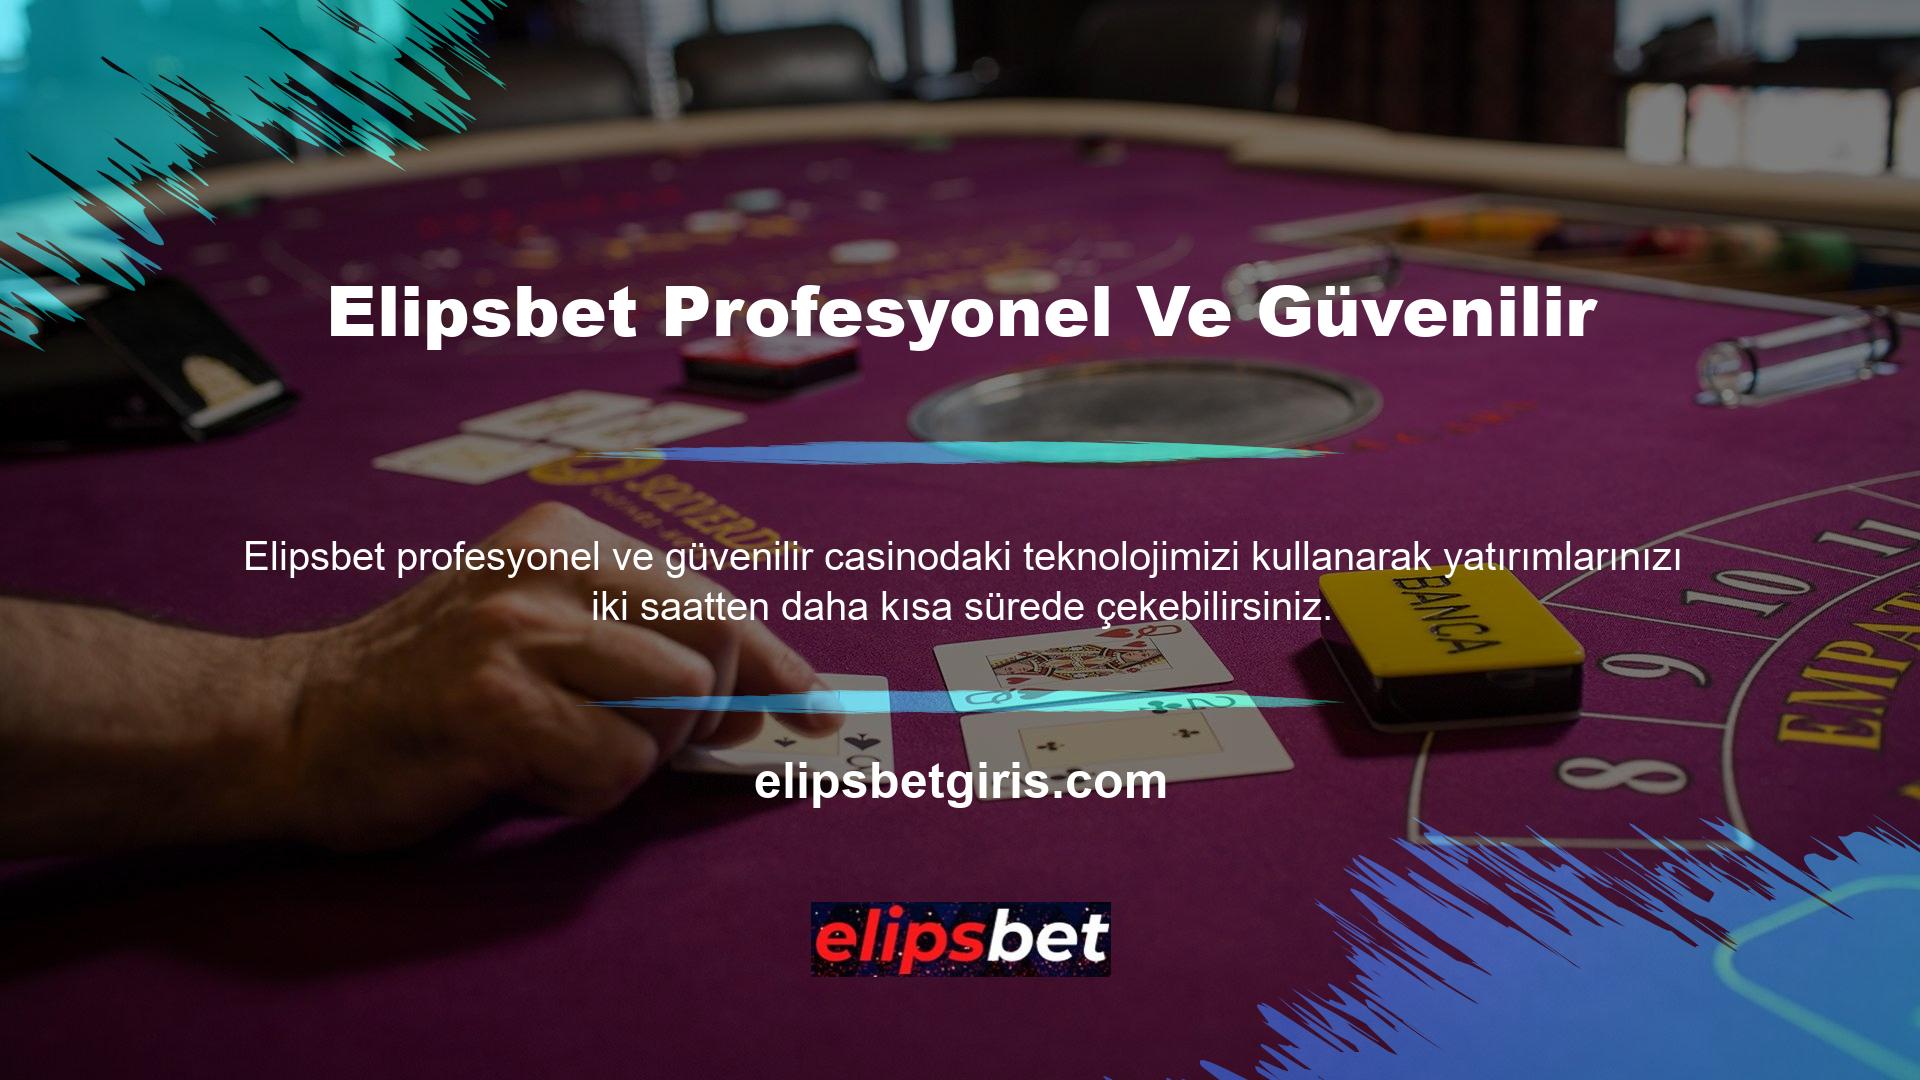 Oyuncular için canlı destek hattının öneminin farkına varan Casino Elipsbet, oyuncuların para kazanmasını sağlamak için müşteri desteğini e-posta, telgraf ve sosyal medya aracılığıyla canlı sohbetin ötesine genişletti